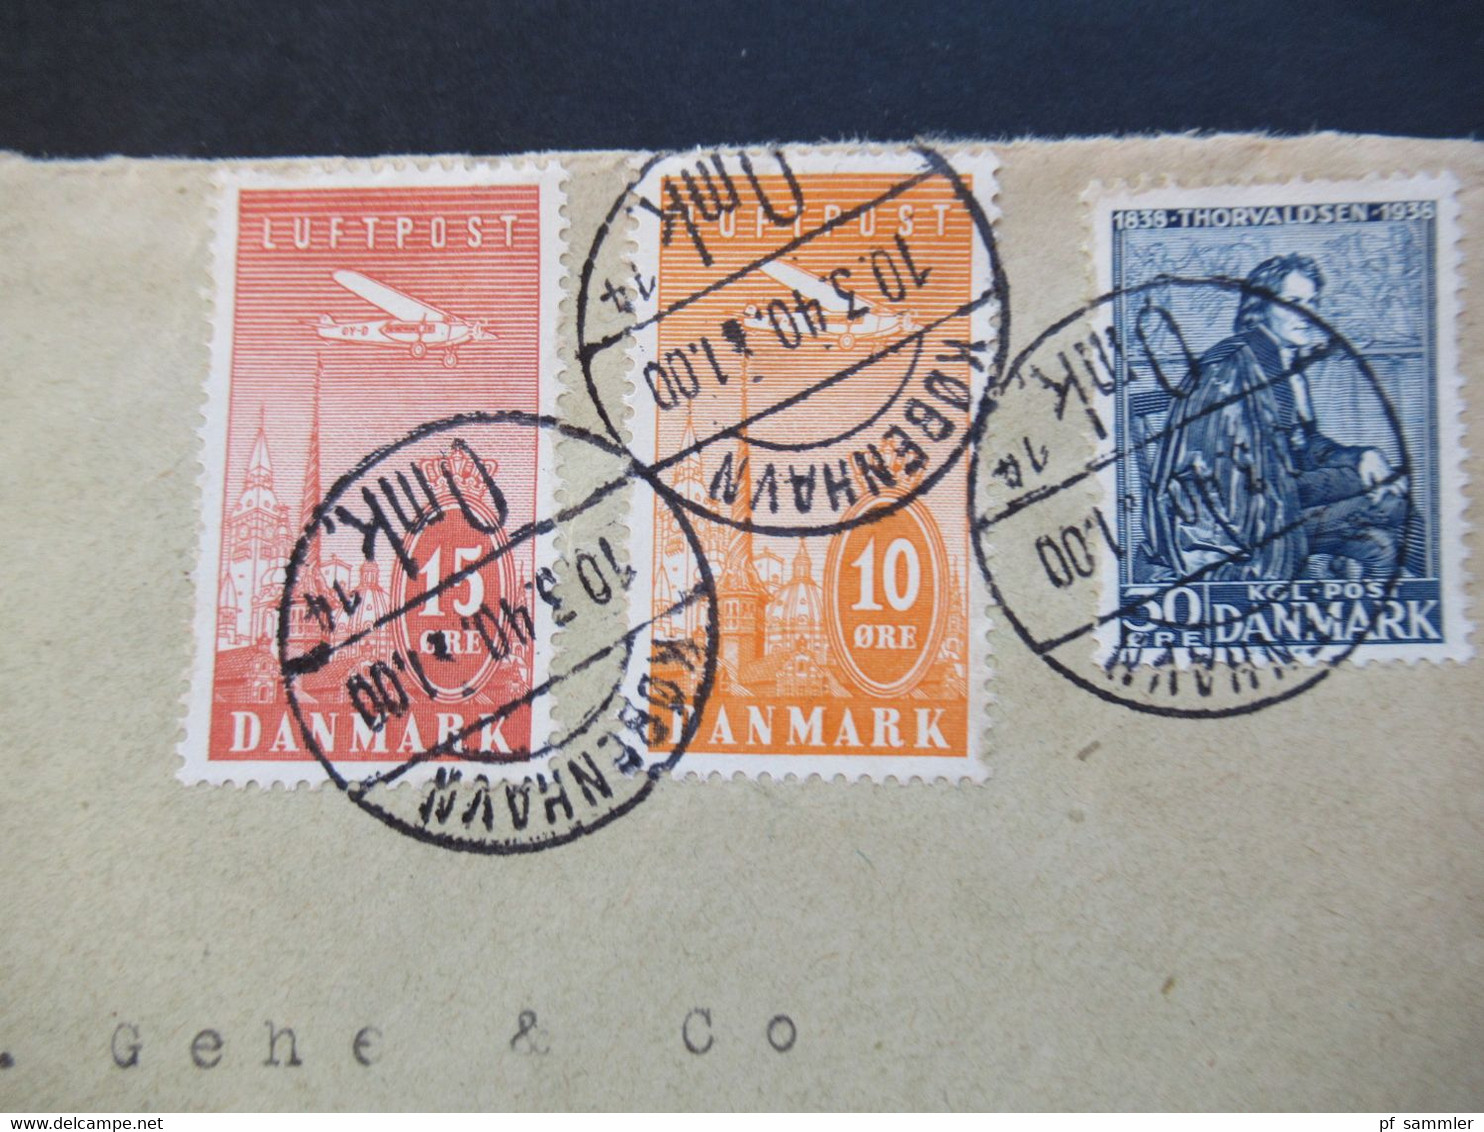 Dänemark 1940 Zensurbeleg OKW Zensurstreifen Geprüft Air Mail Luftpostmarken Nr. 217 / 218 Umschlag Lars Christiansen - Briefe U. Dokumente